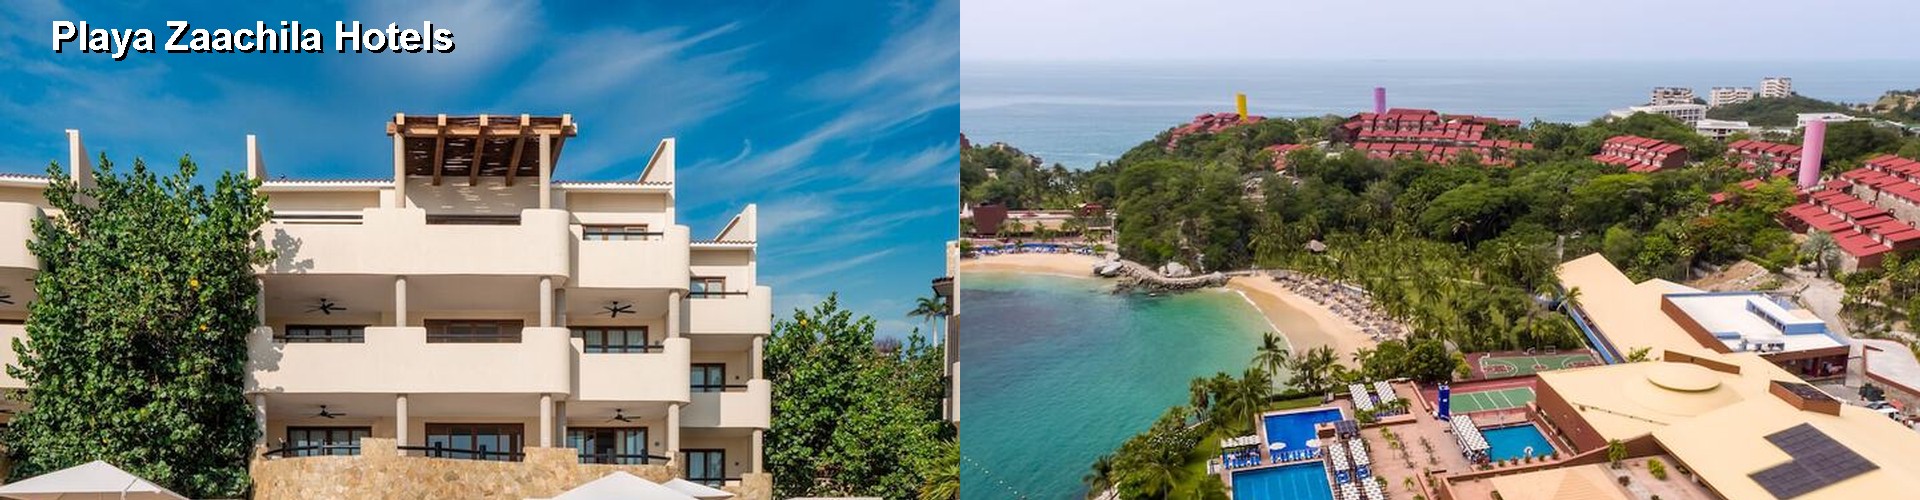 5 Best Hotels near Playa Zaachila